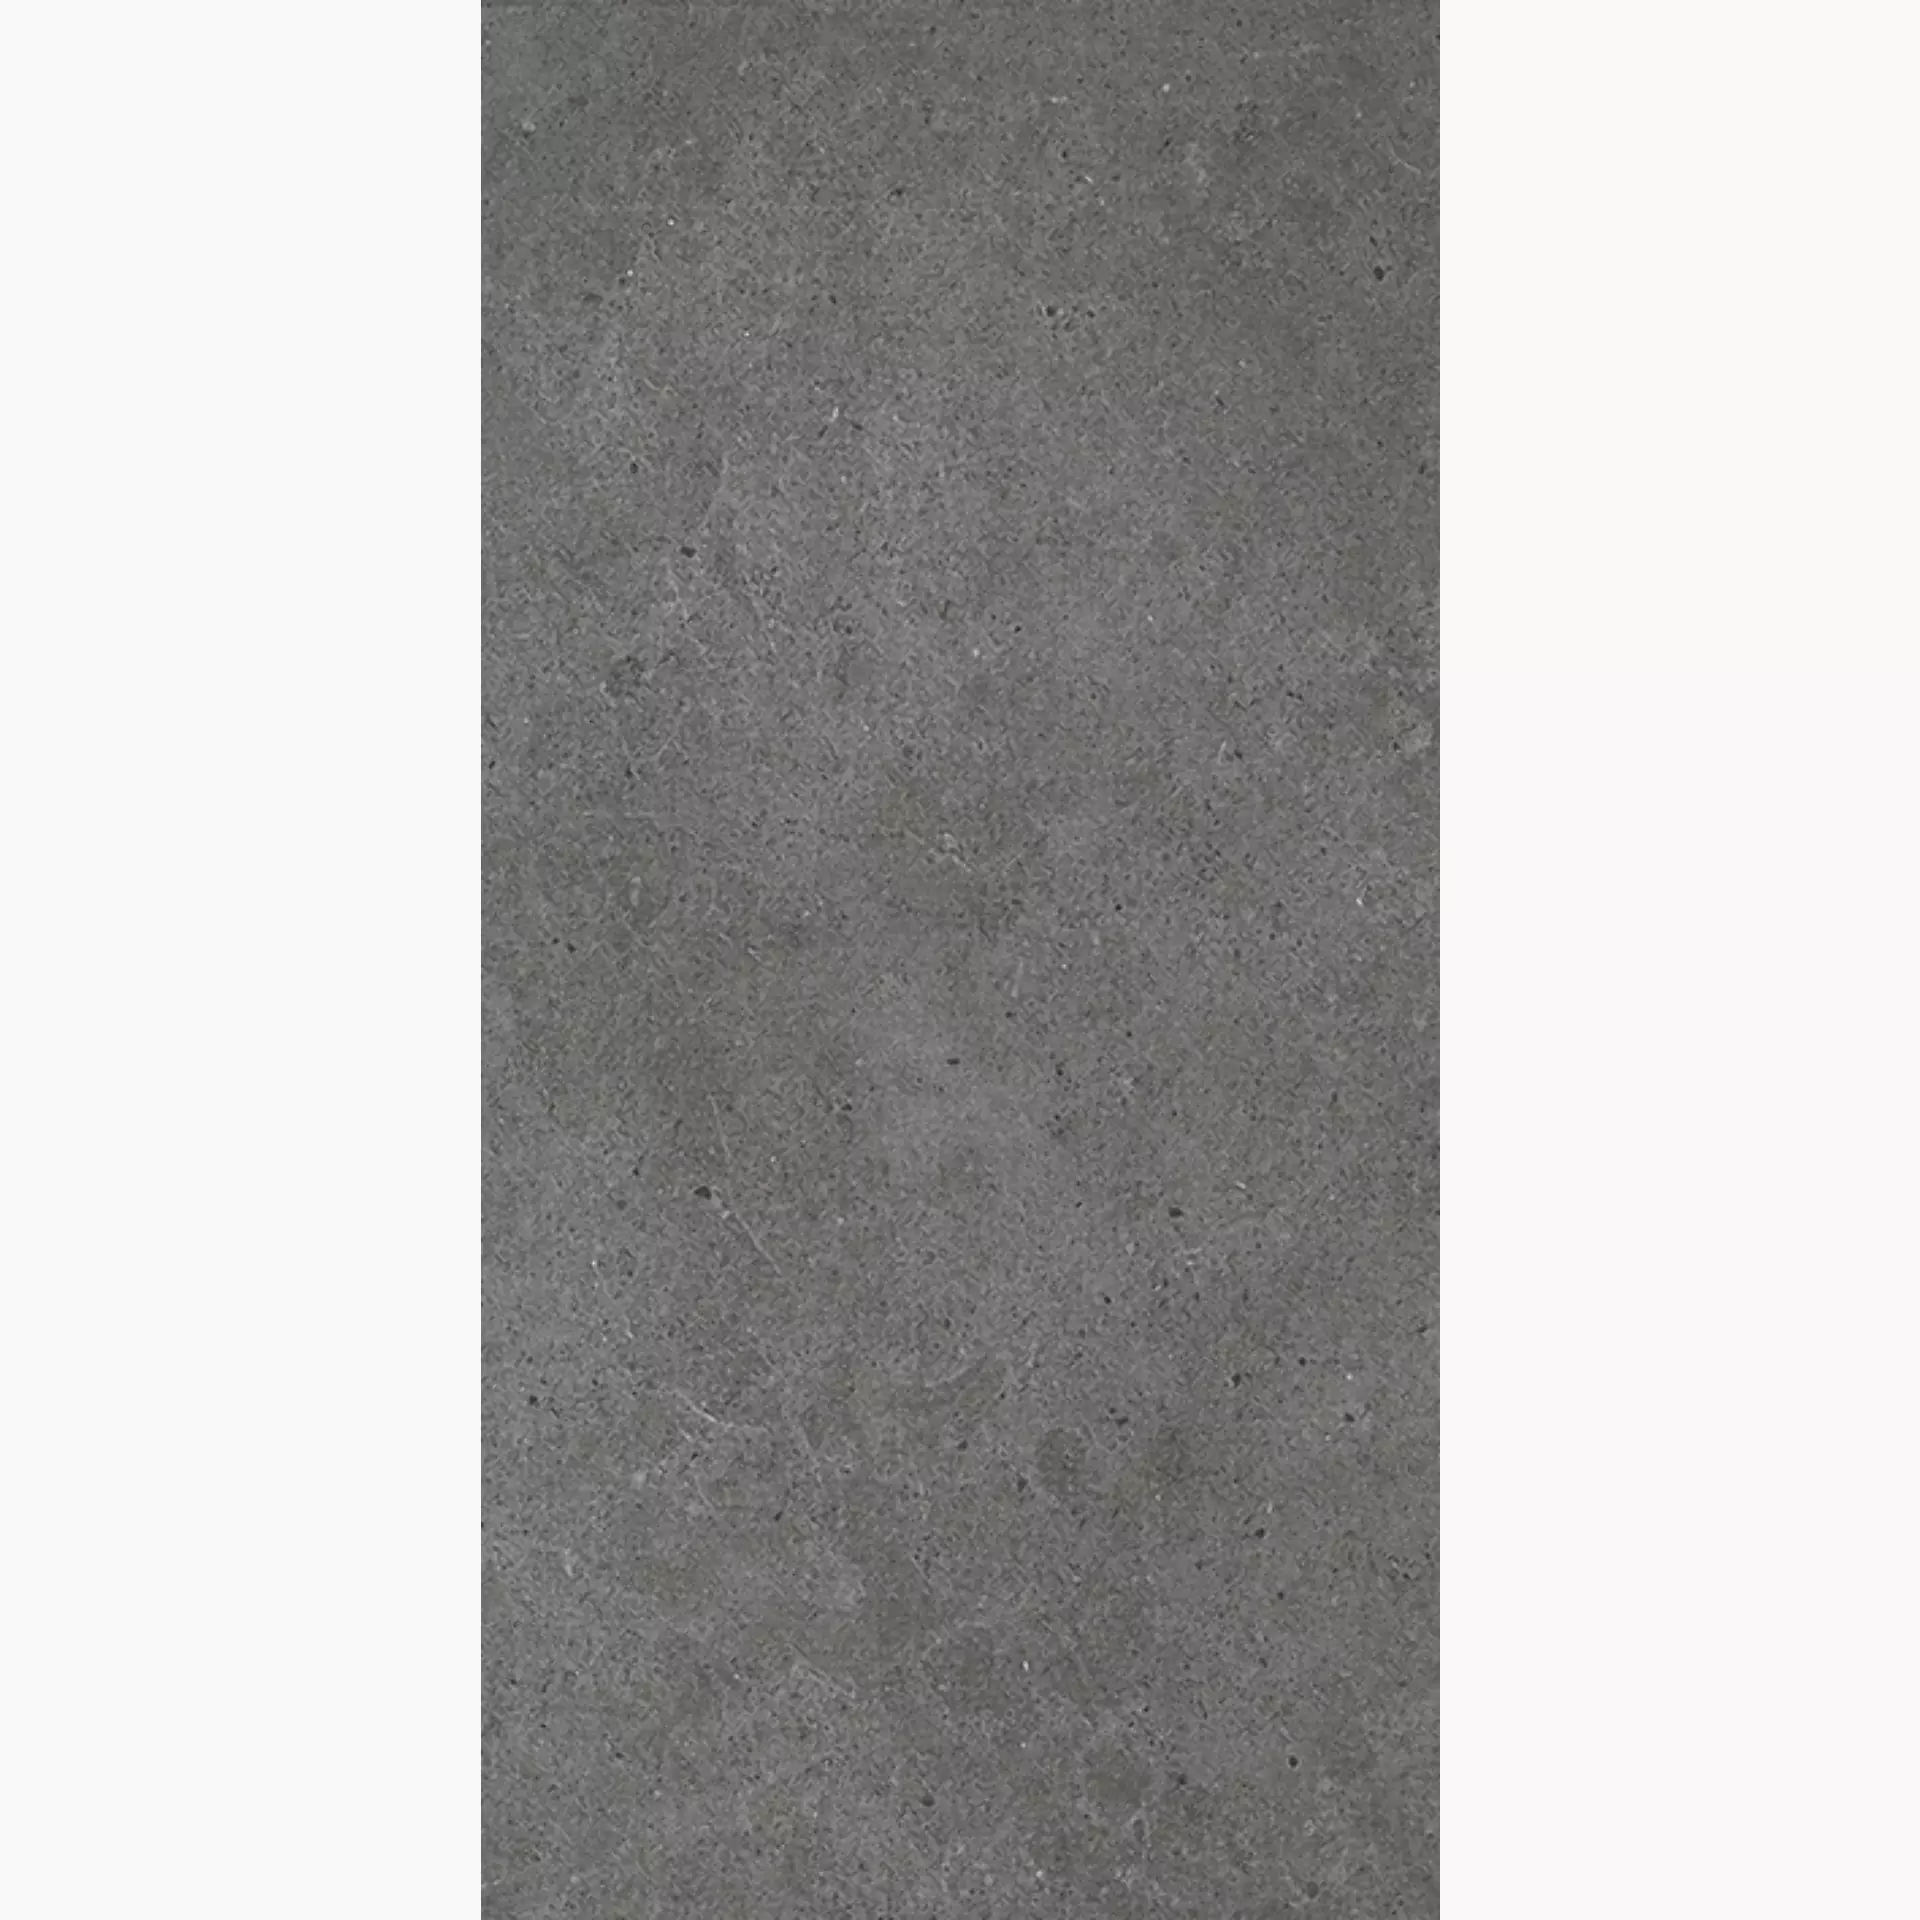 Wandfliese,Bodenfliese Villeroy & Boch Solid Tones Dark Concrete Antislip Dark Concrete 2521-PC62 rutschhemmend 30x60cm rektifiziert 10mm